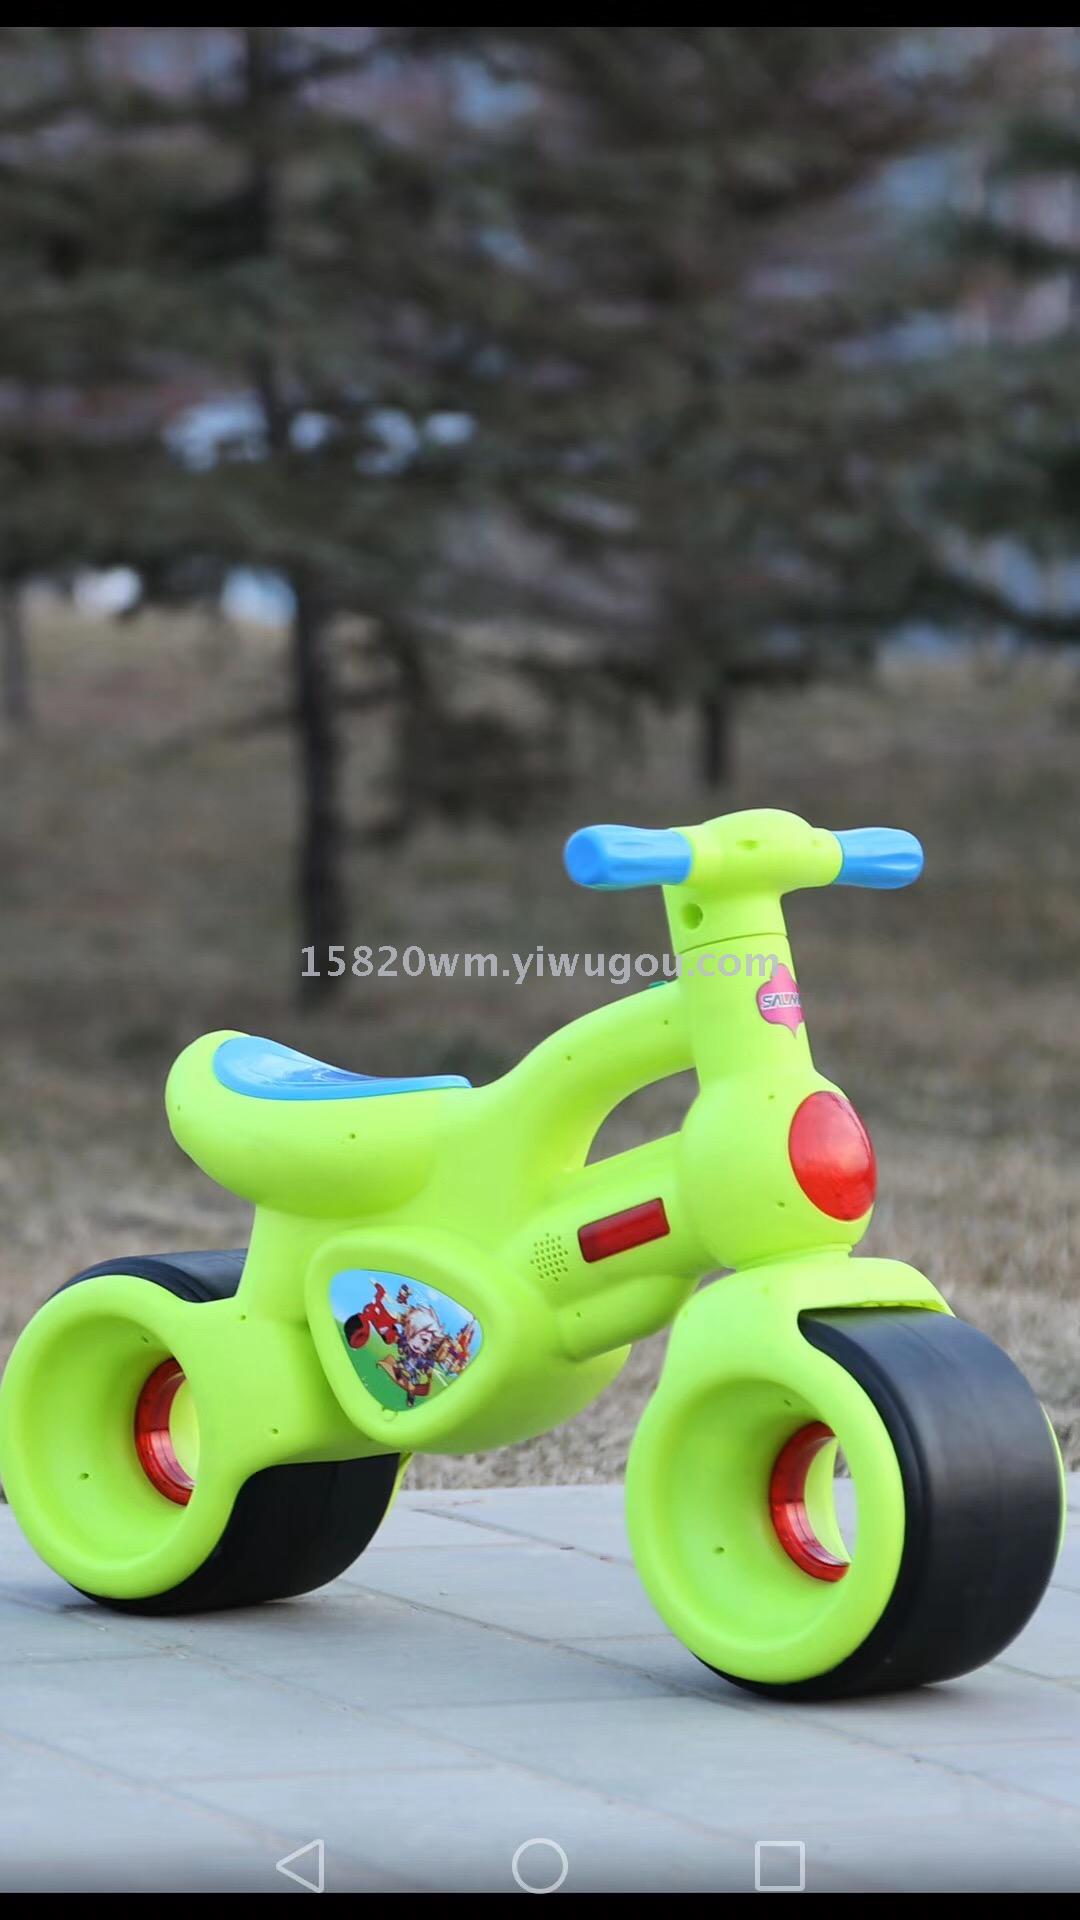 婴儿玩具 婴儿车 婴童用品 工程车 新奇玩具 玩具 安全座椅